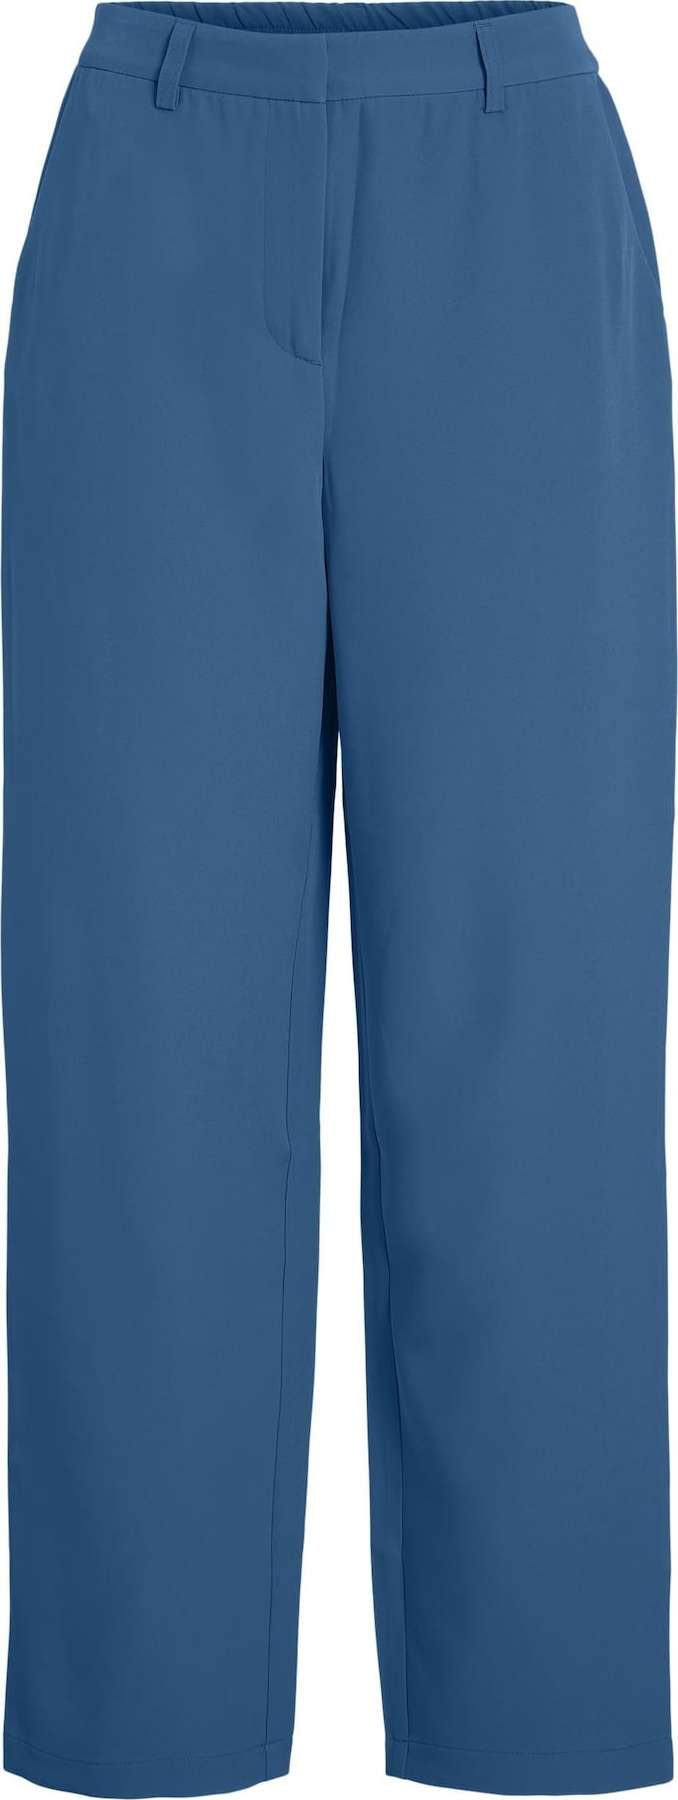 VILA Chino kalhoty 'KAMMA' tmavě modrá